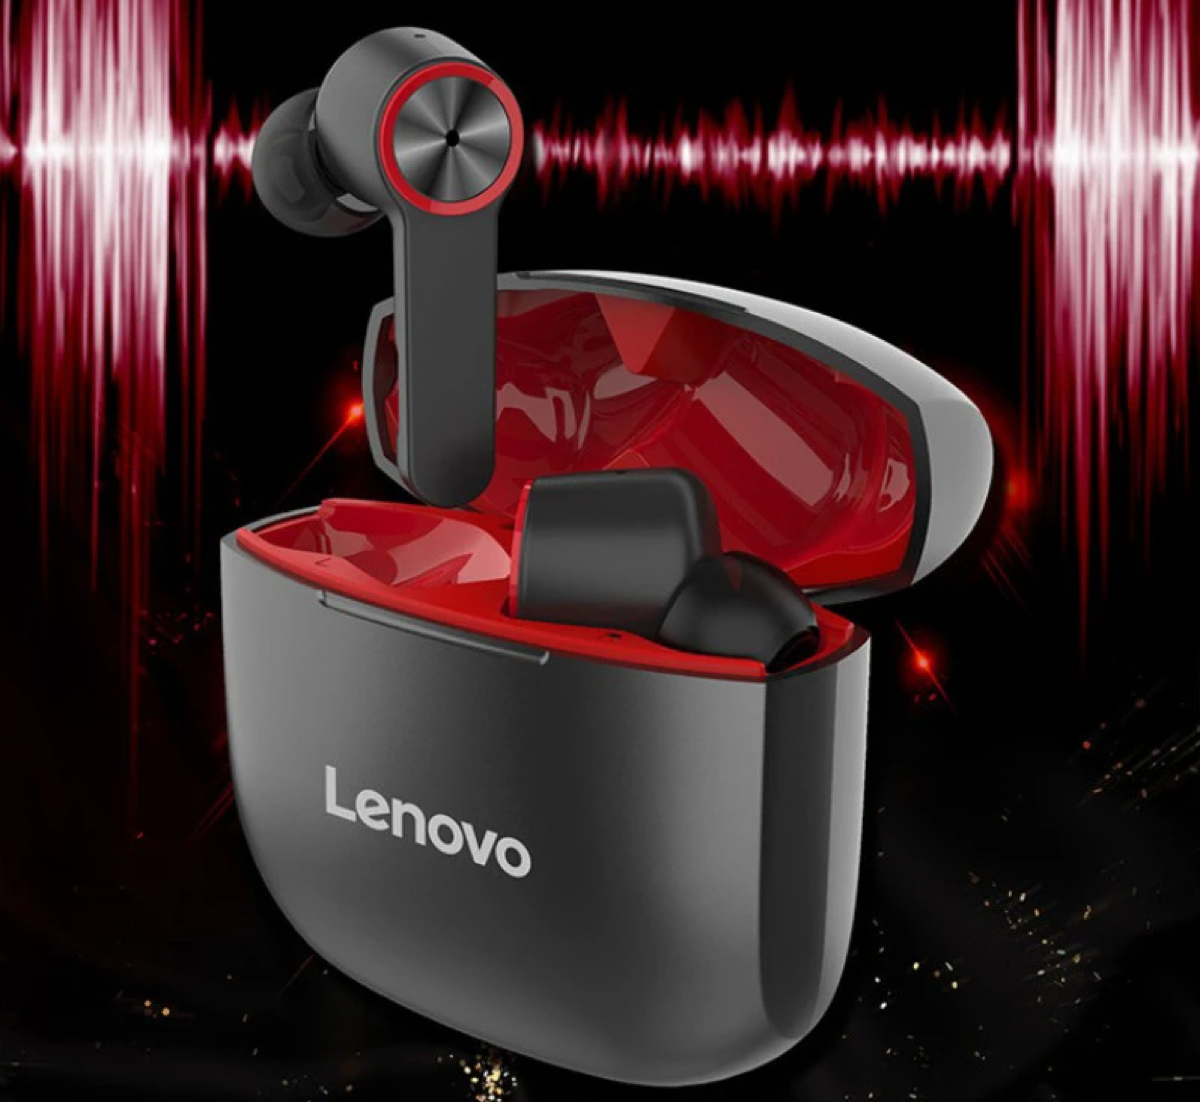 Lenovo HT78, gli auricolari true wireless con ANC in offerta a 33,99 euro